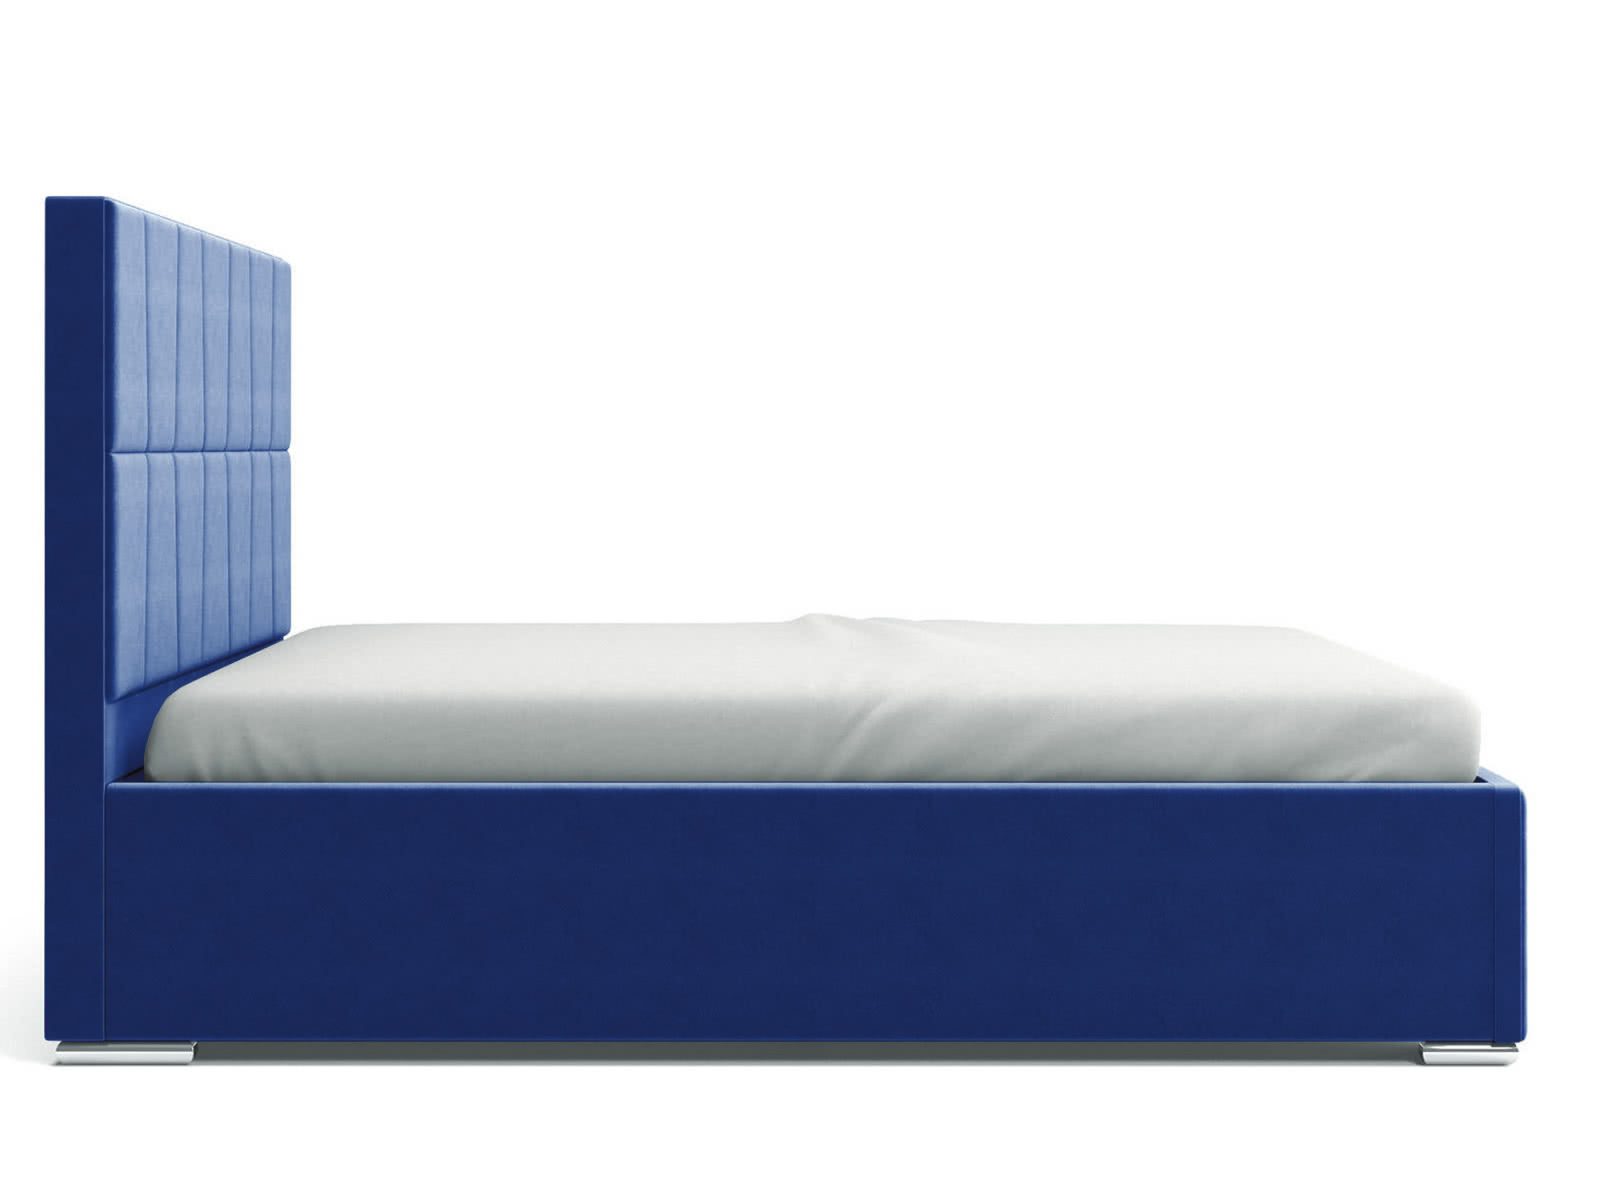 Купить кровать СтолЛайн Кровать СтолЛайн Пассаж 160x200 с подъемным механизмом дешево на официальном сайте